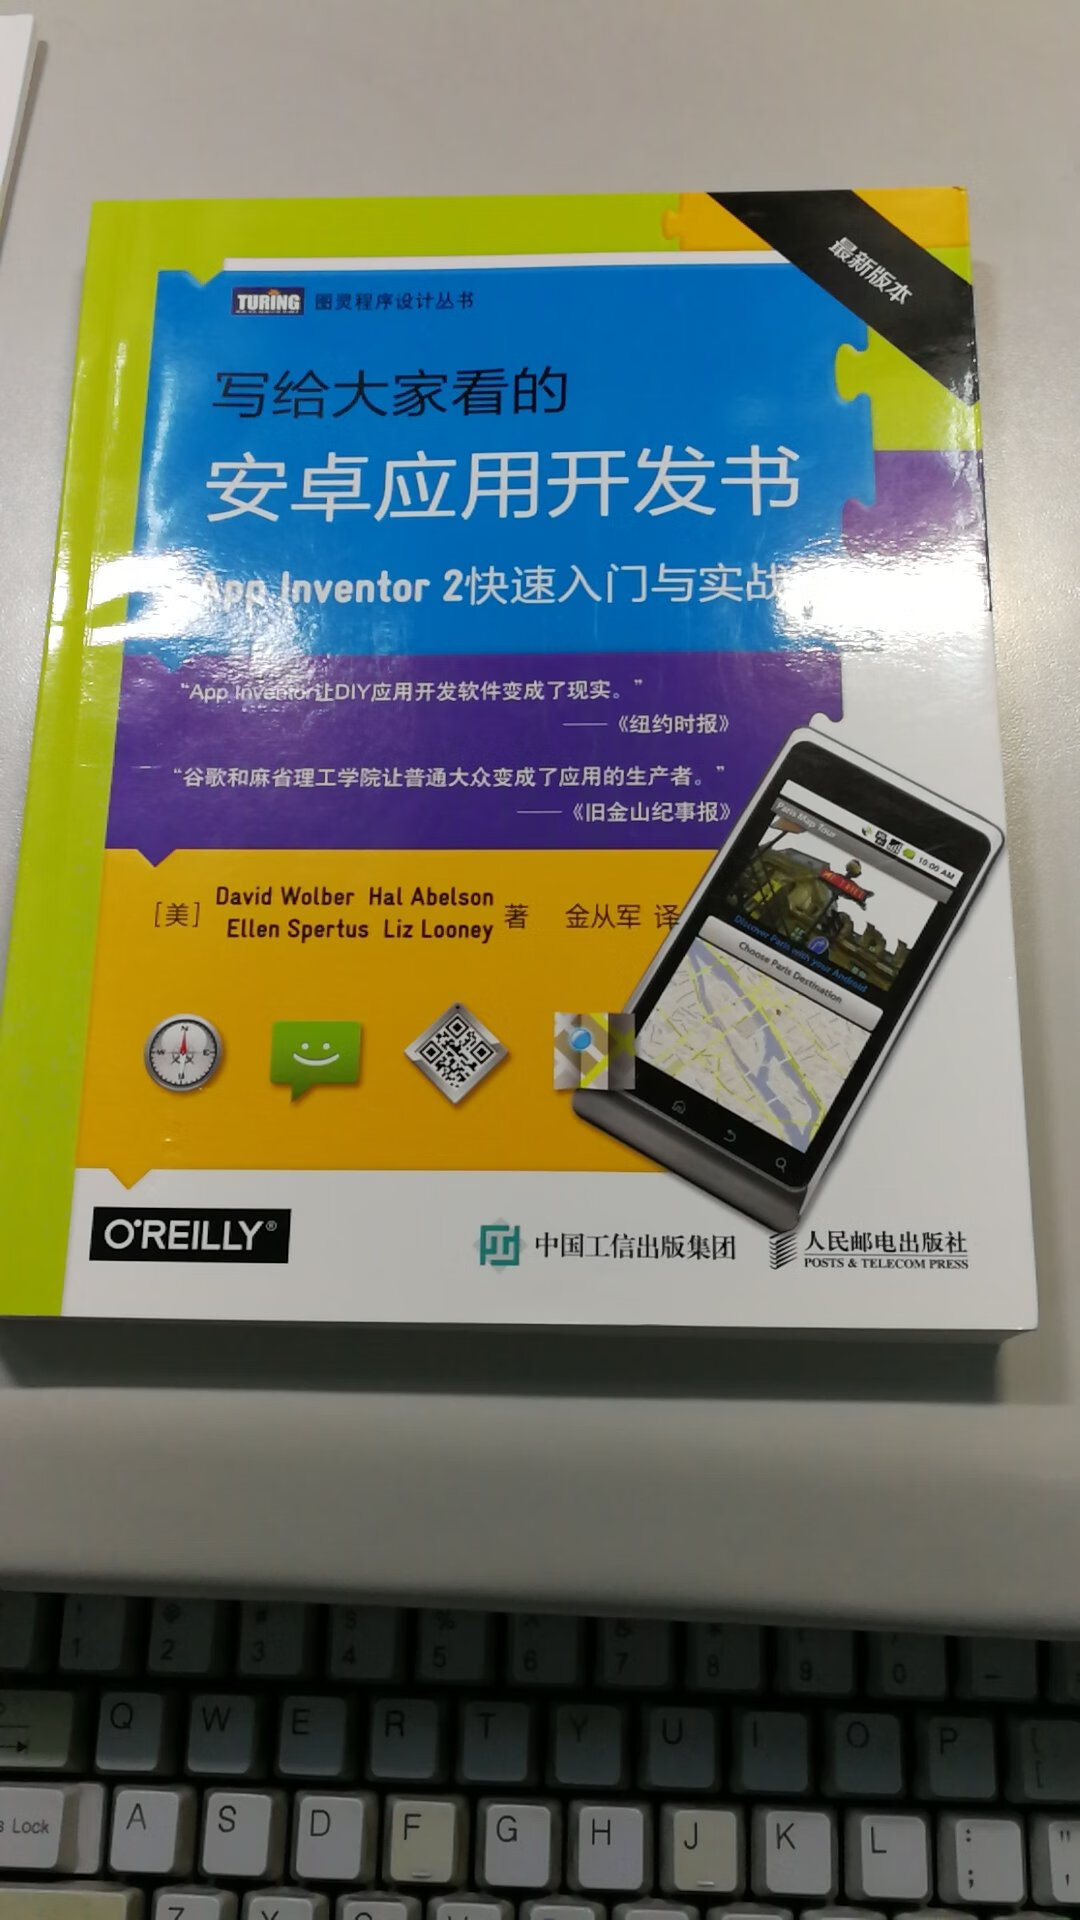 这是老巫婆金从军老师出的第二本书了，必须买来拜读一番，之前出的《安卓应用开发书》写得很好，是学习app inventor编程的必备宝典，值得购买！